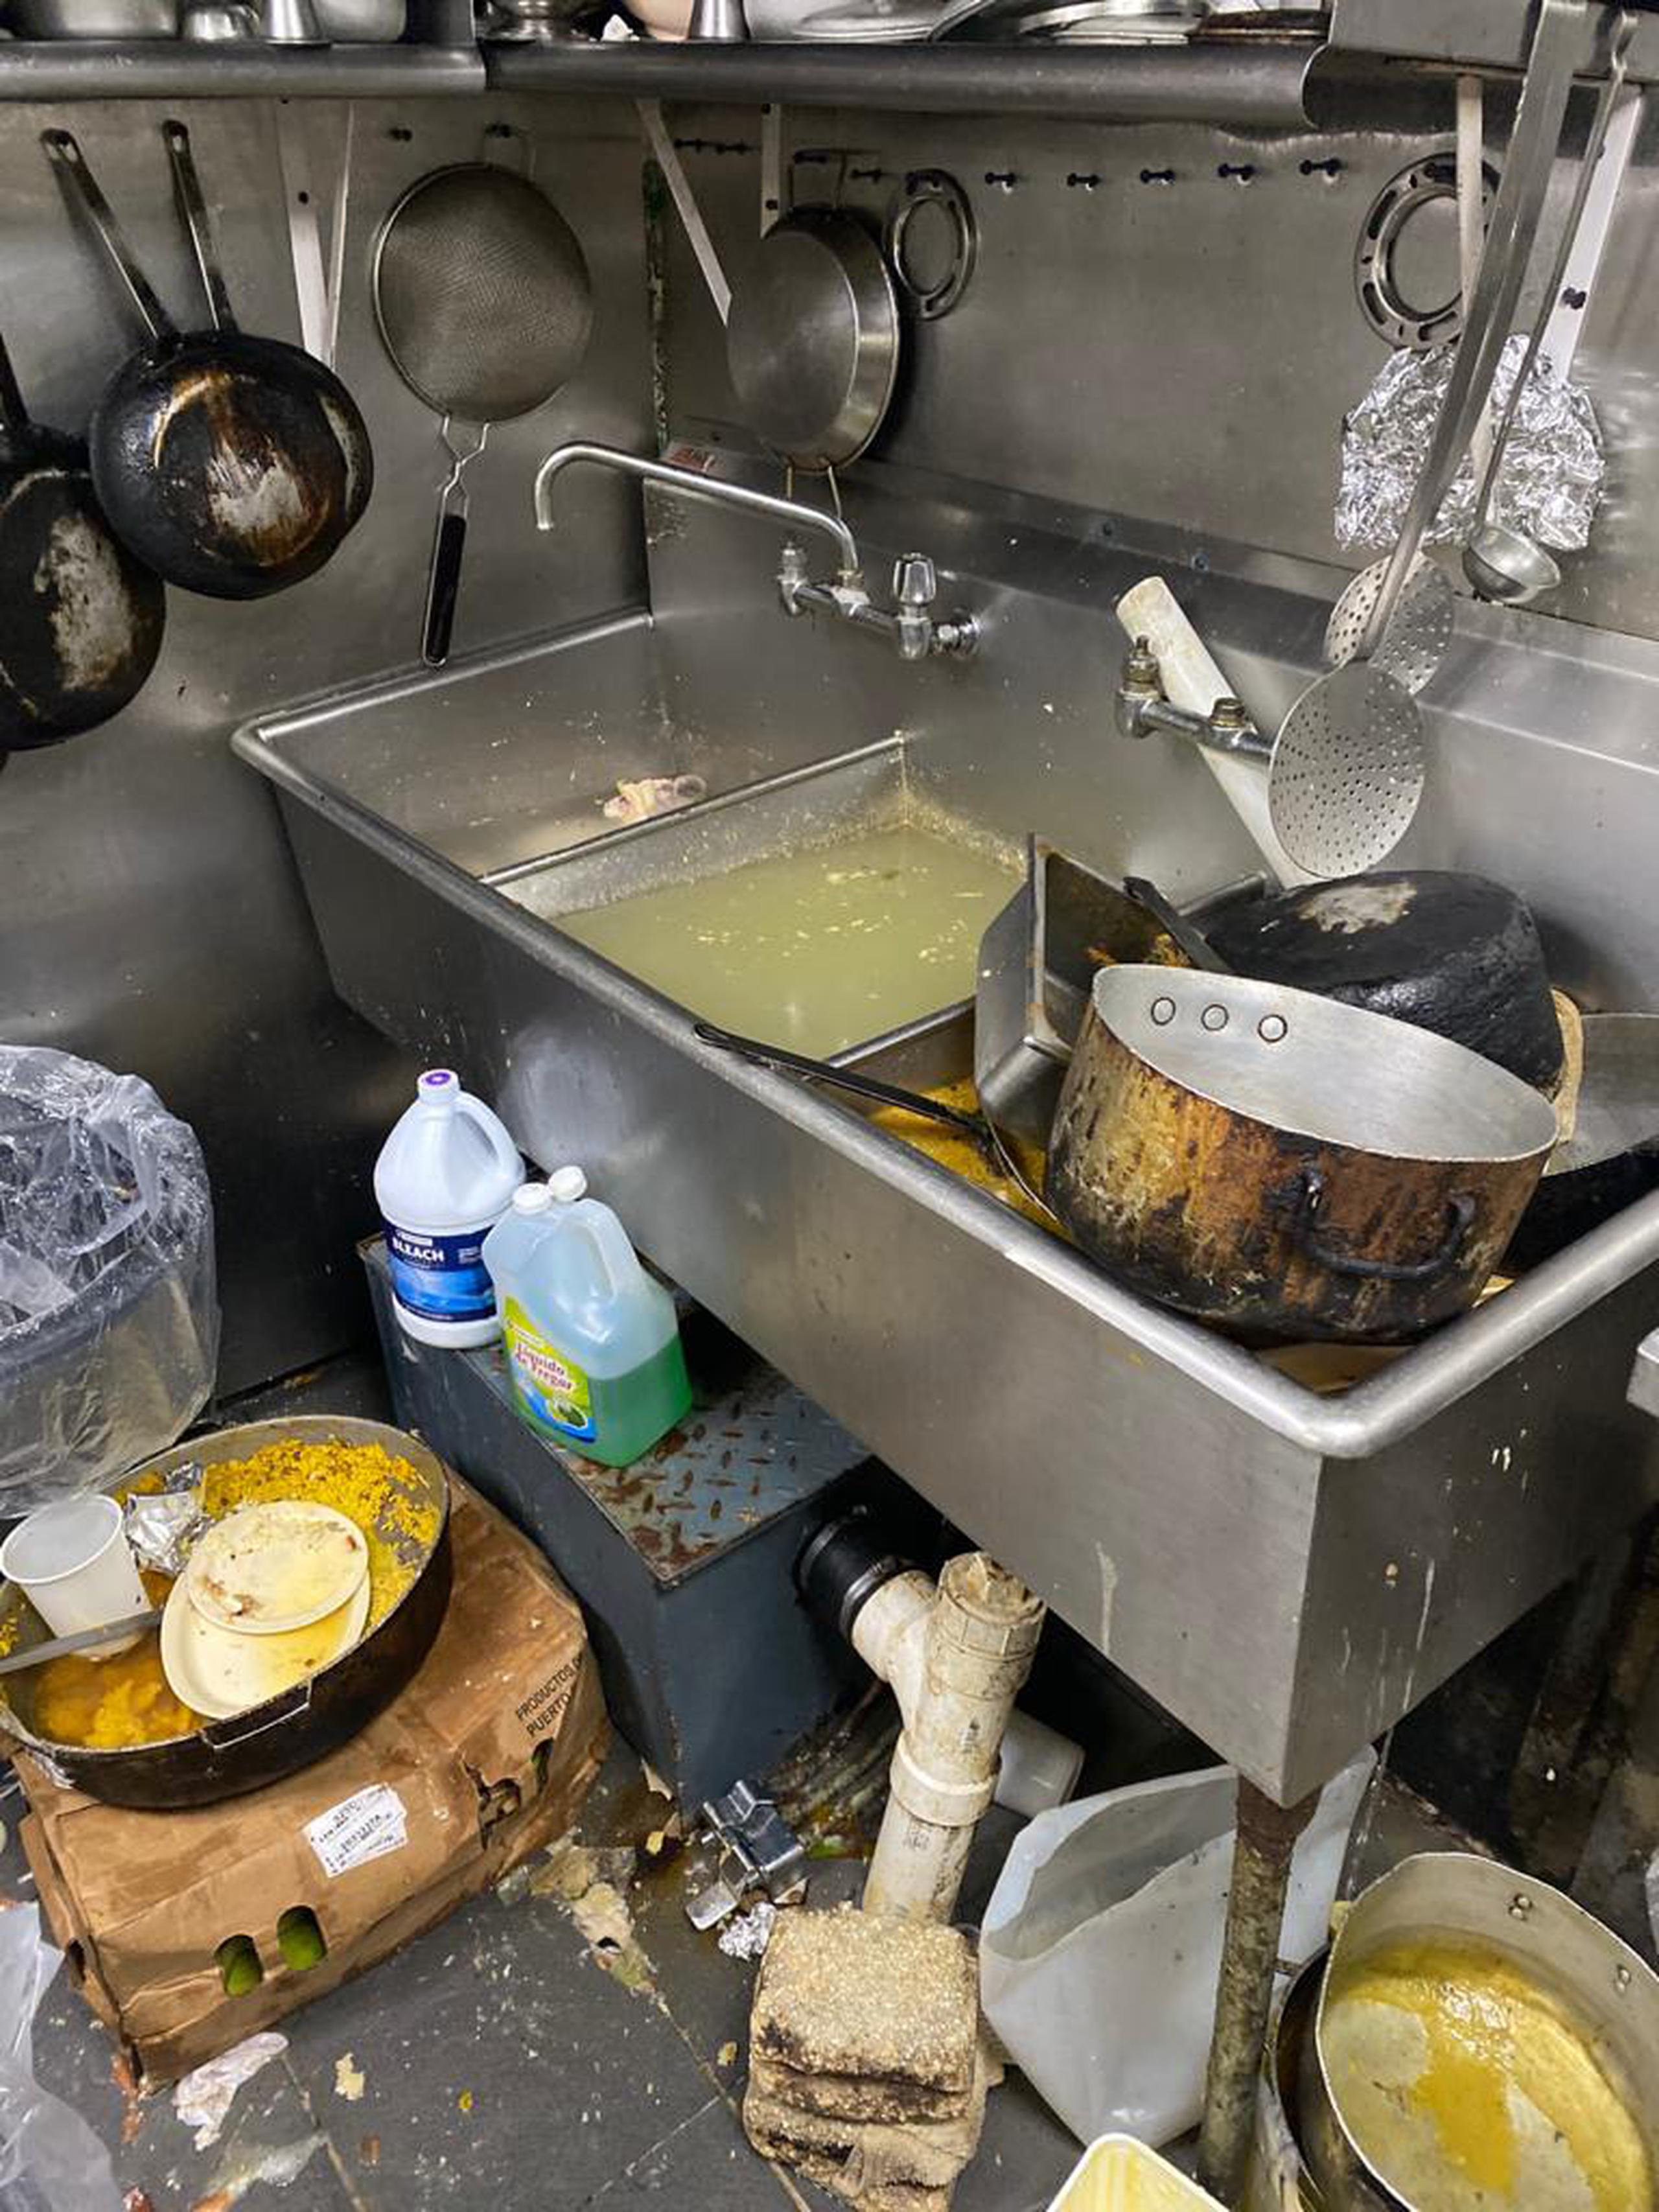 Inspectores del Departamento de Salud encontraron así una cocina de un restaurante en Condado.